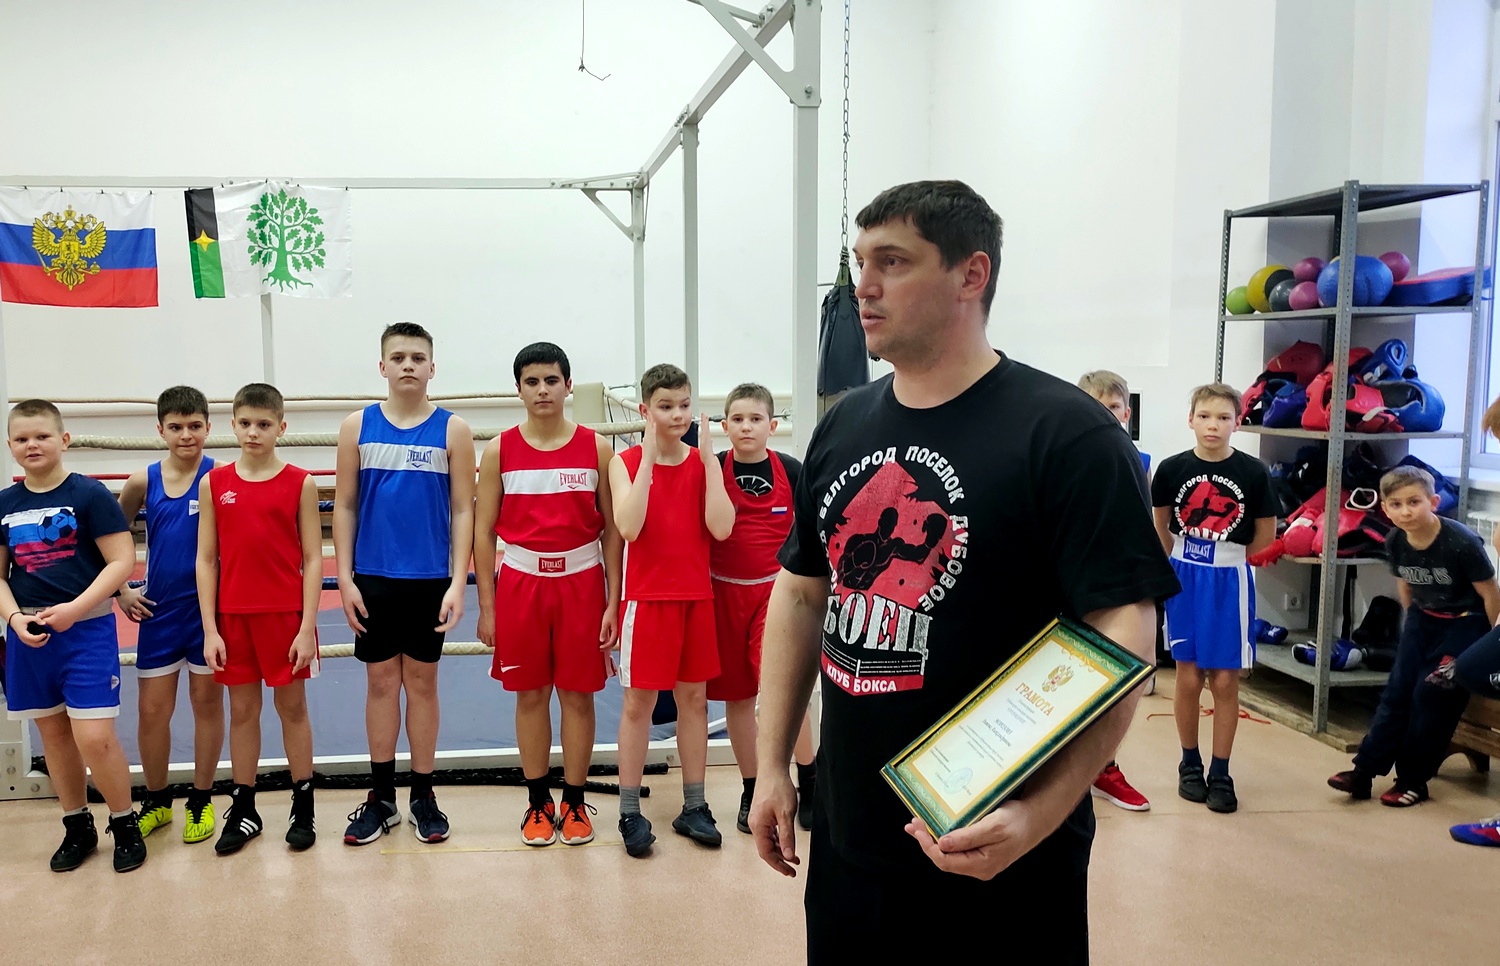 Группа компаний поощрила участников клуба «Боец» за  призовые места на областных соревнованиях по боксу